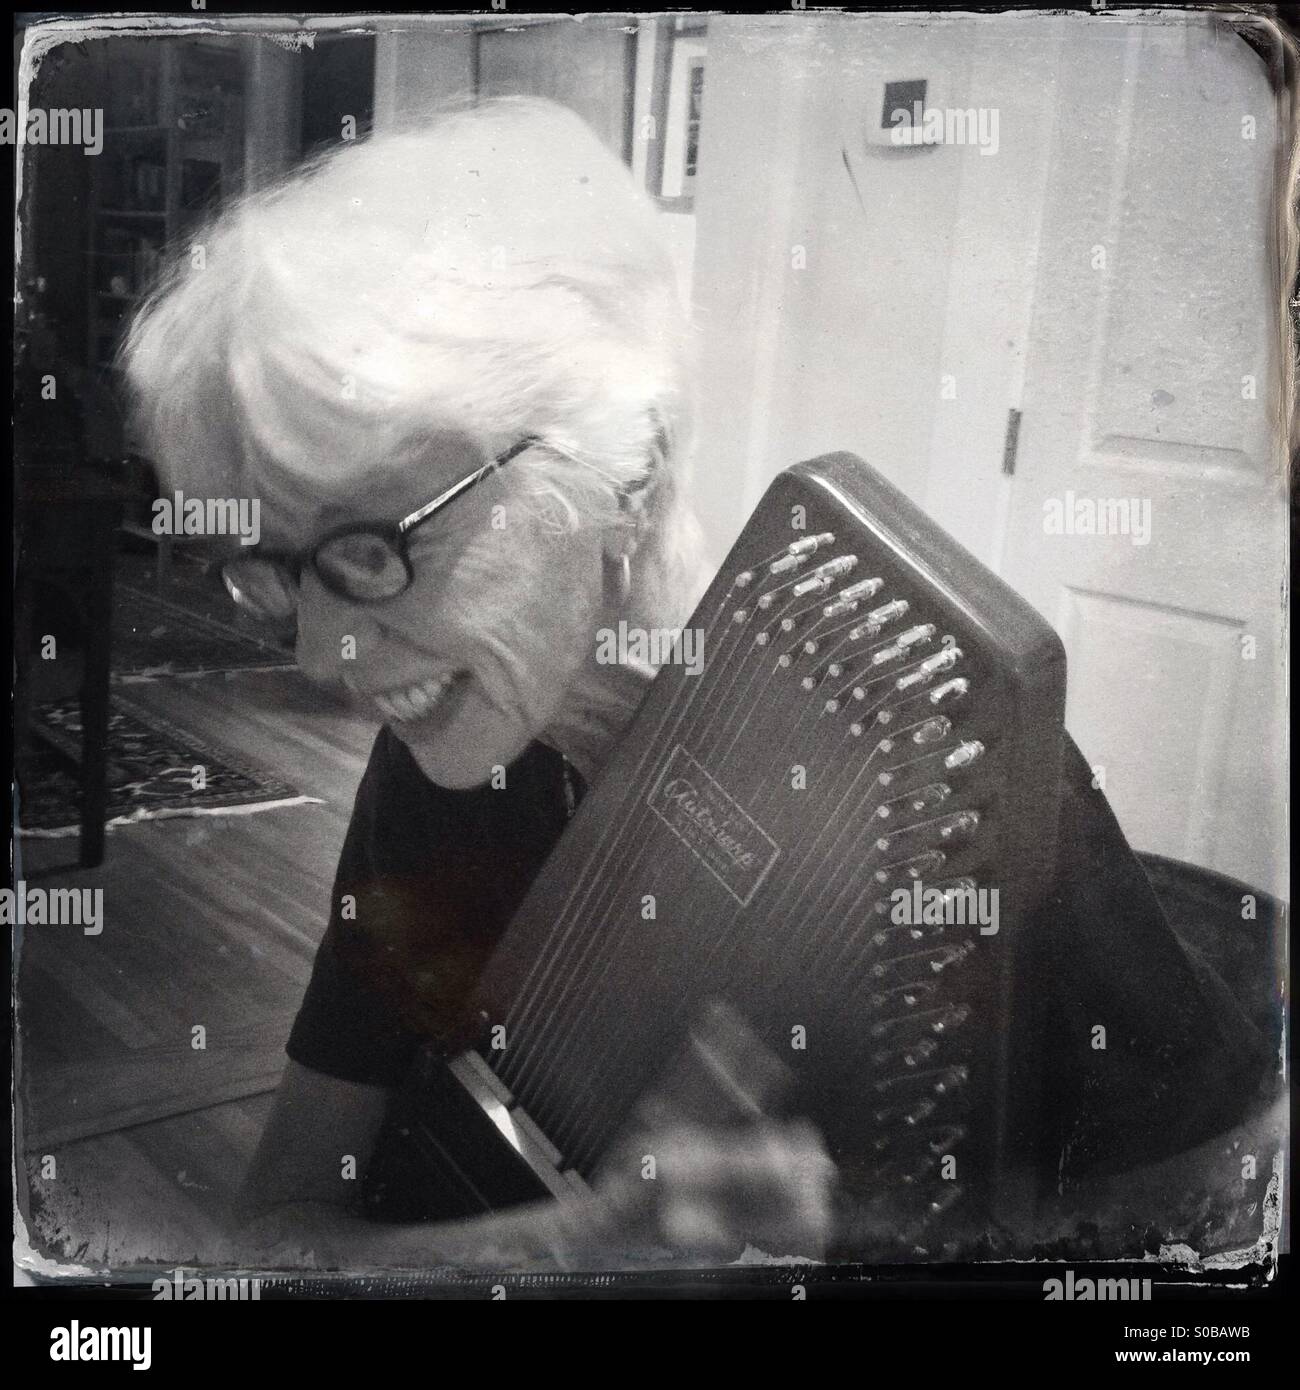 Ältere Frau Autoharp spielen. Stockfoto